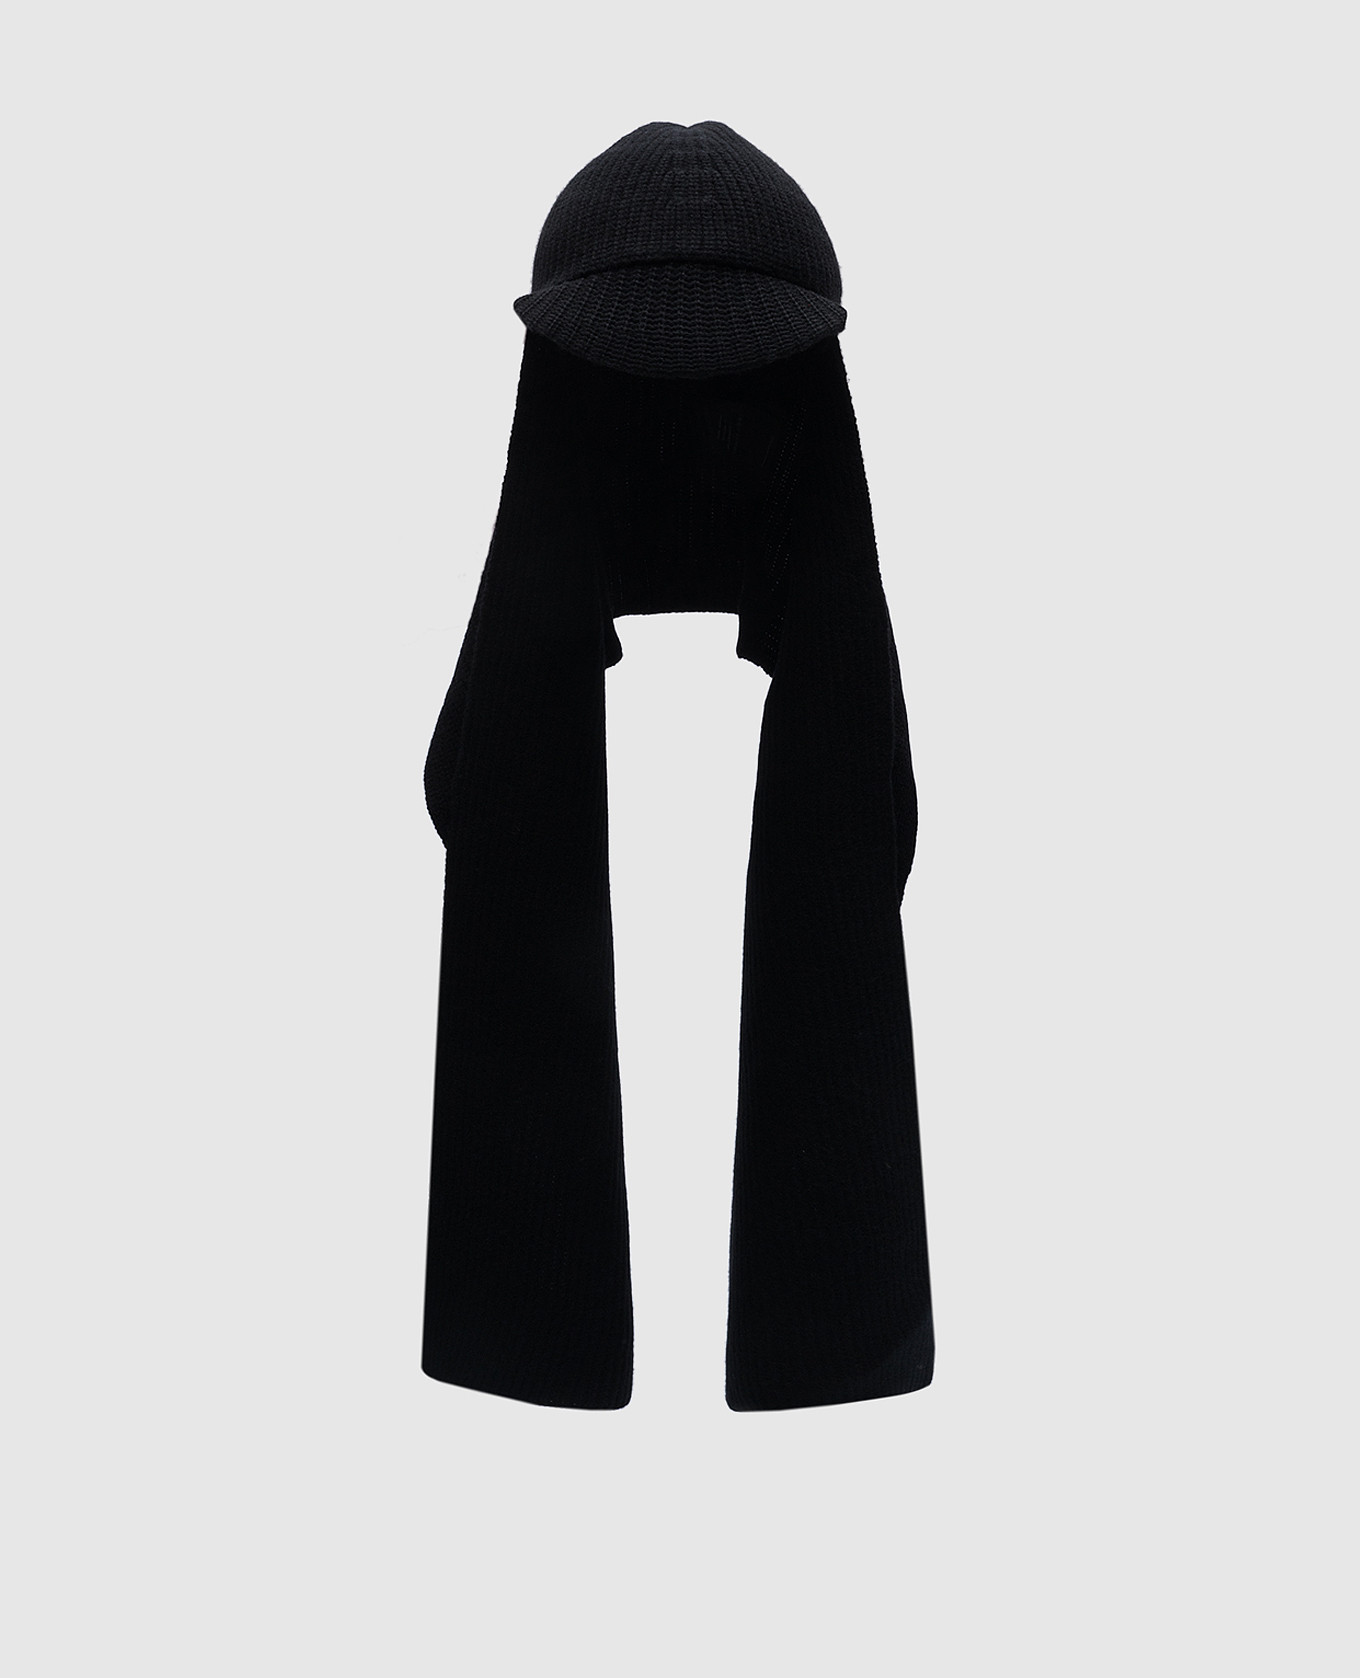 Черная шапка с шарфом из шерсти и кашемира